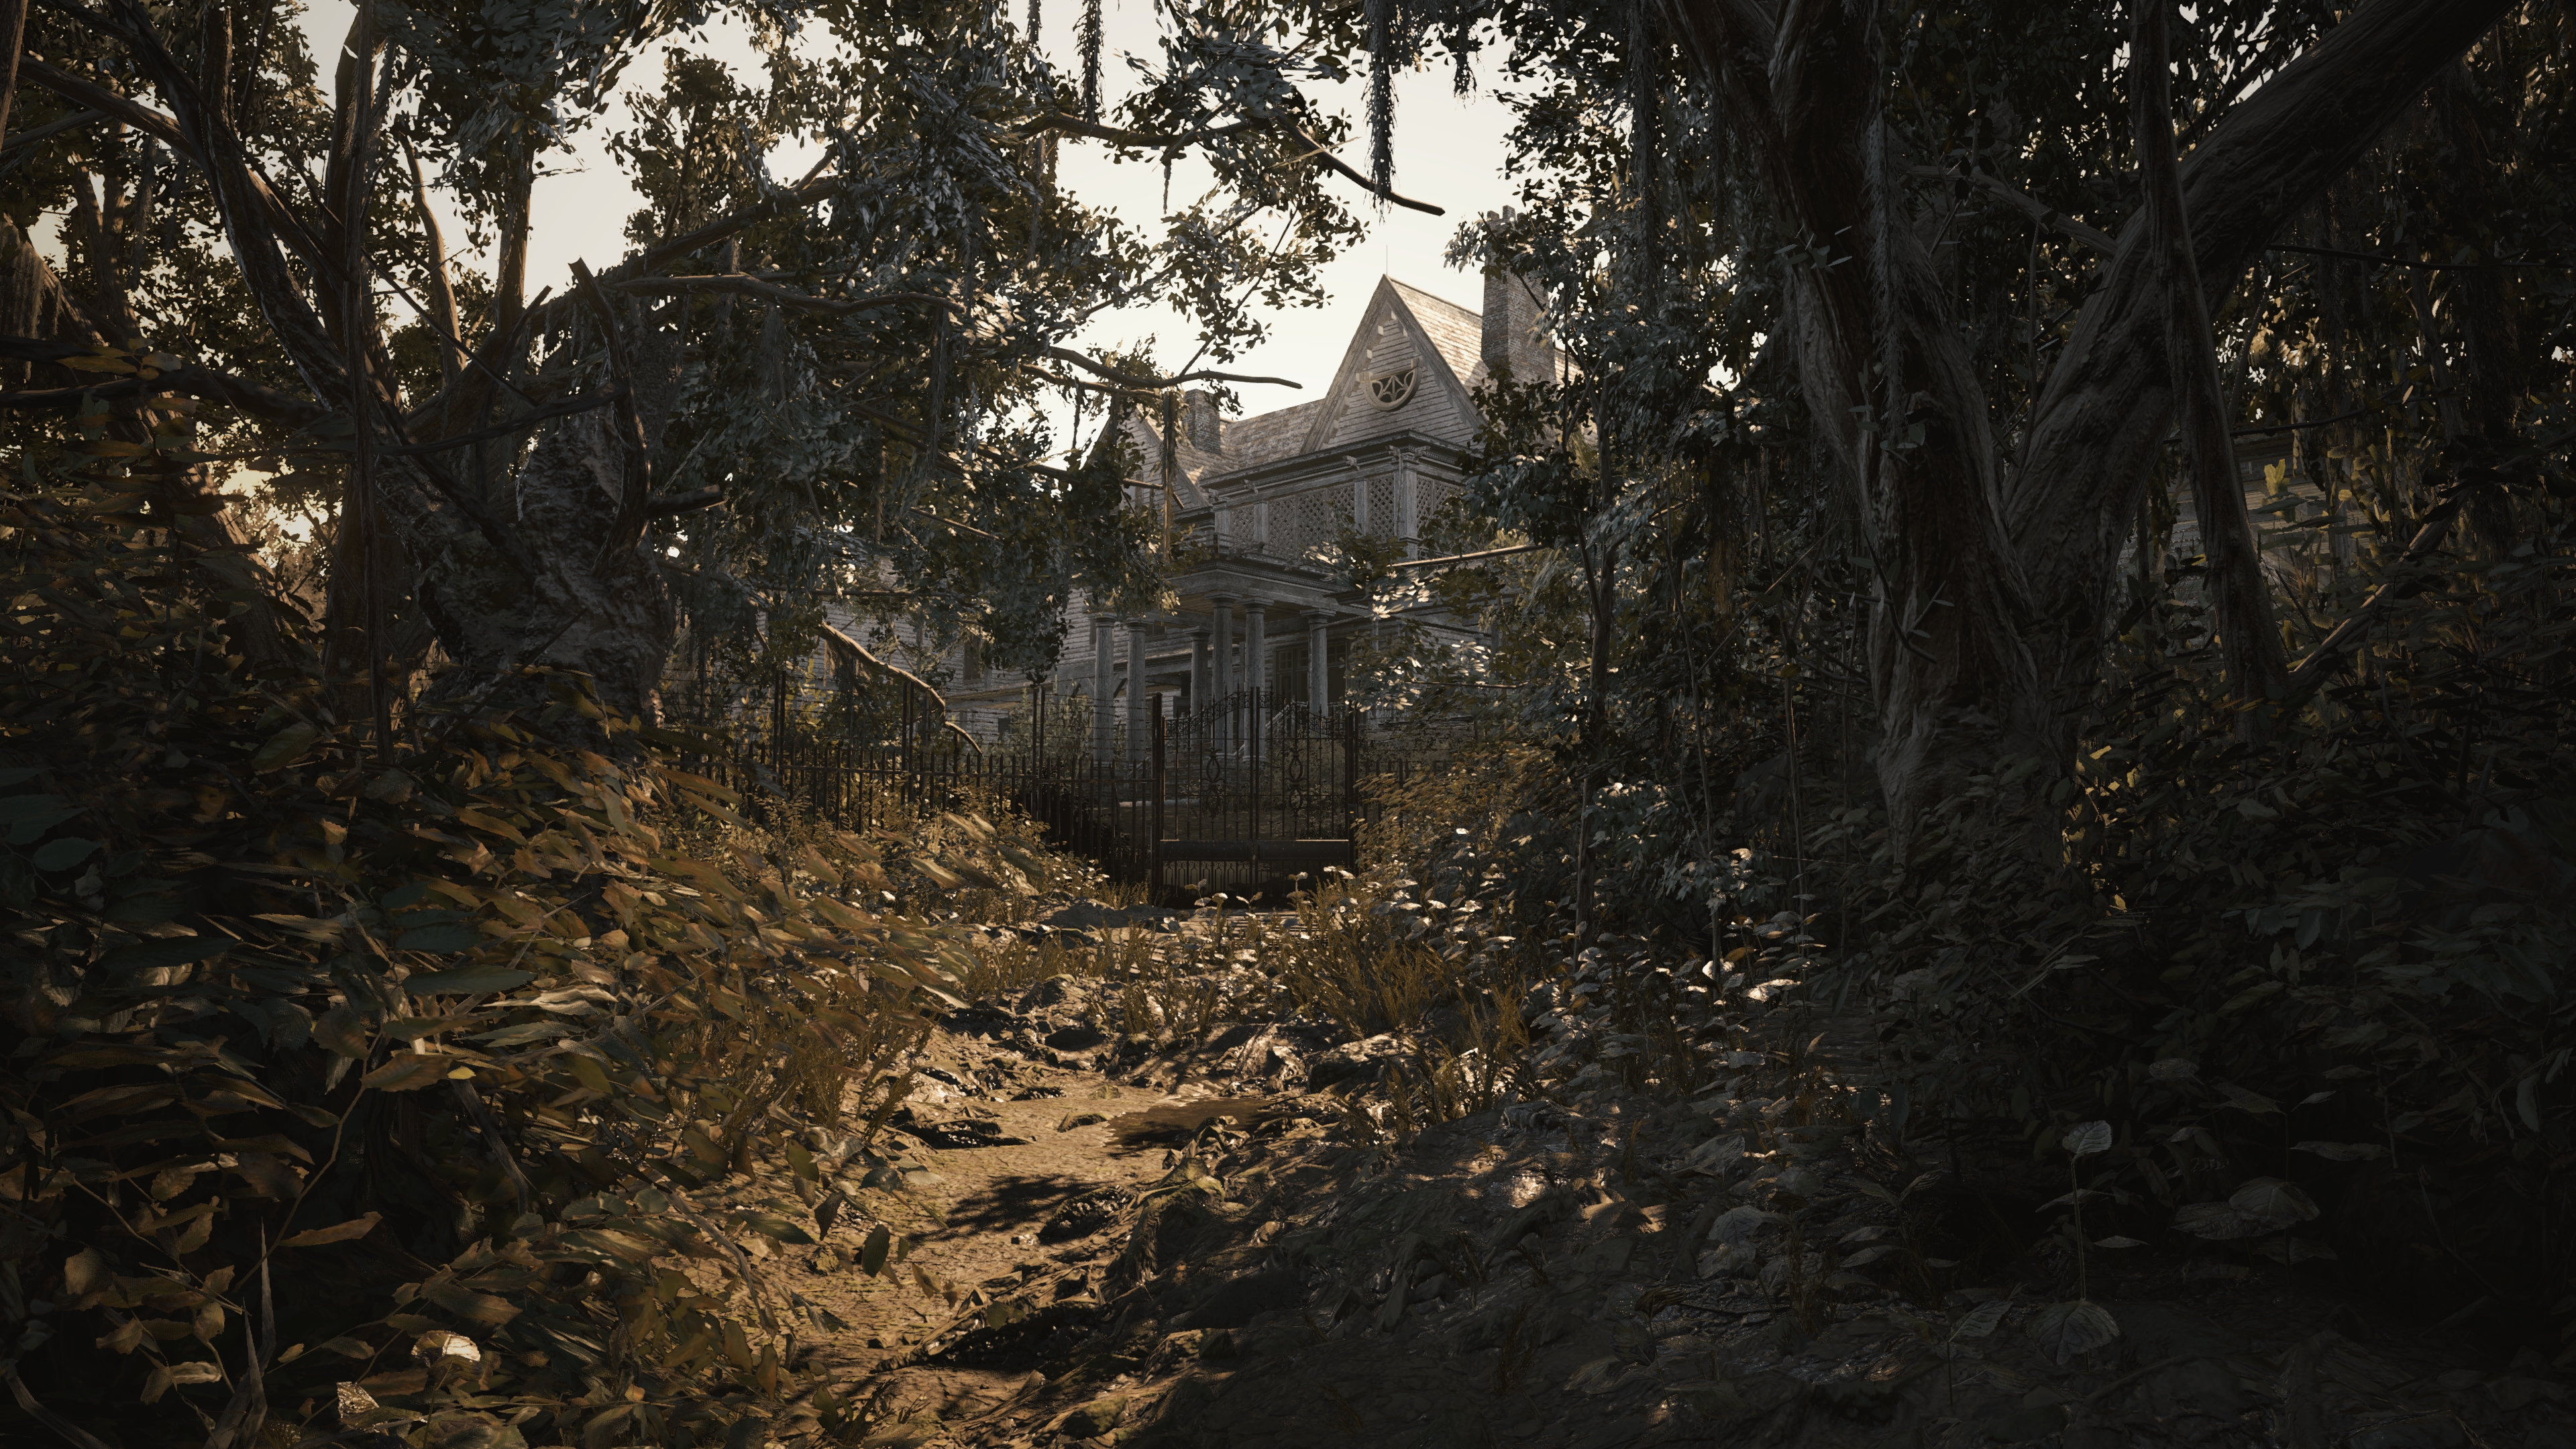 Imagen intermedia donde se muestra una escena que muestra el inicio del juego y la casa principal